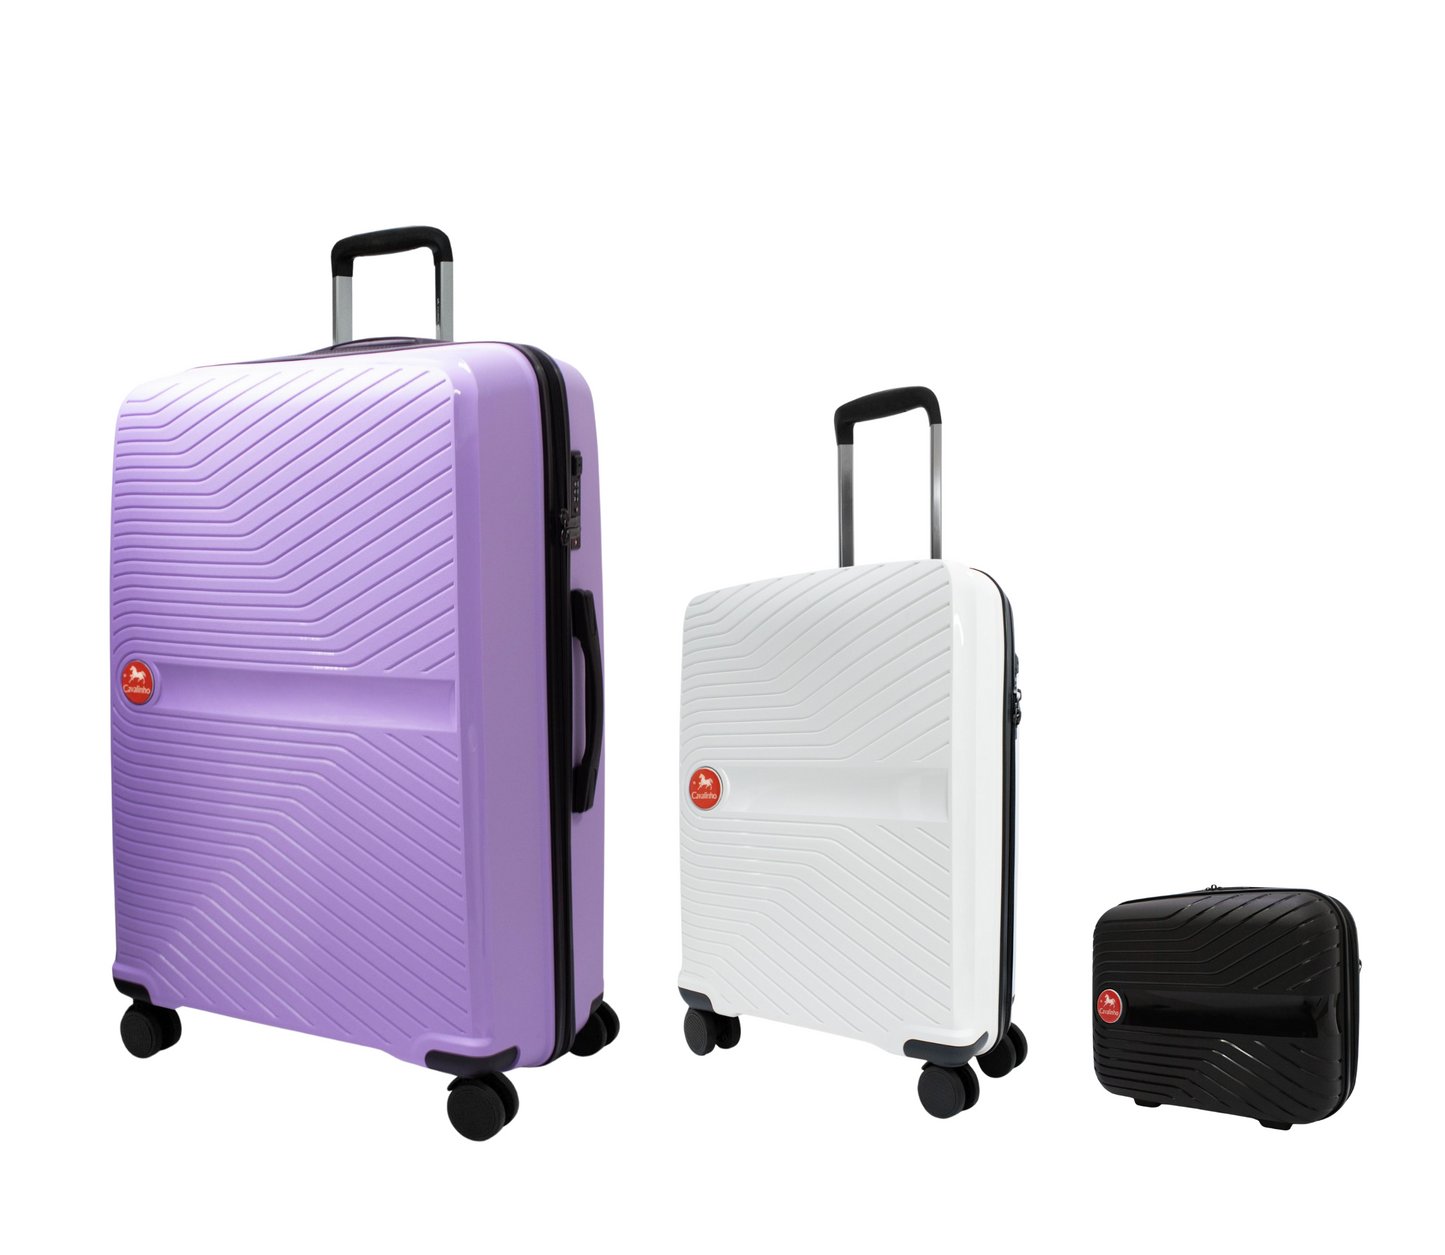 Cavalinho Canada & USA Colorful 3 Piece Luggage Set (15", 19" & 28") - Black White Lilac - 68020004.010639.S151928._2